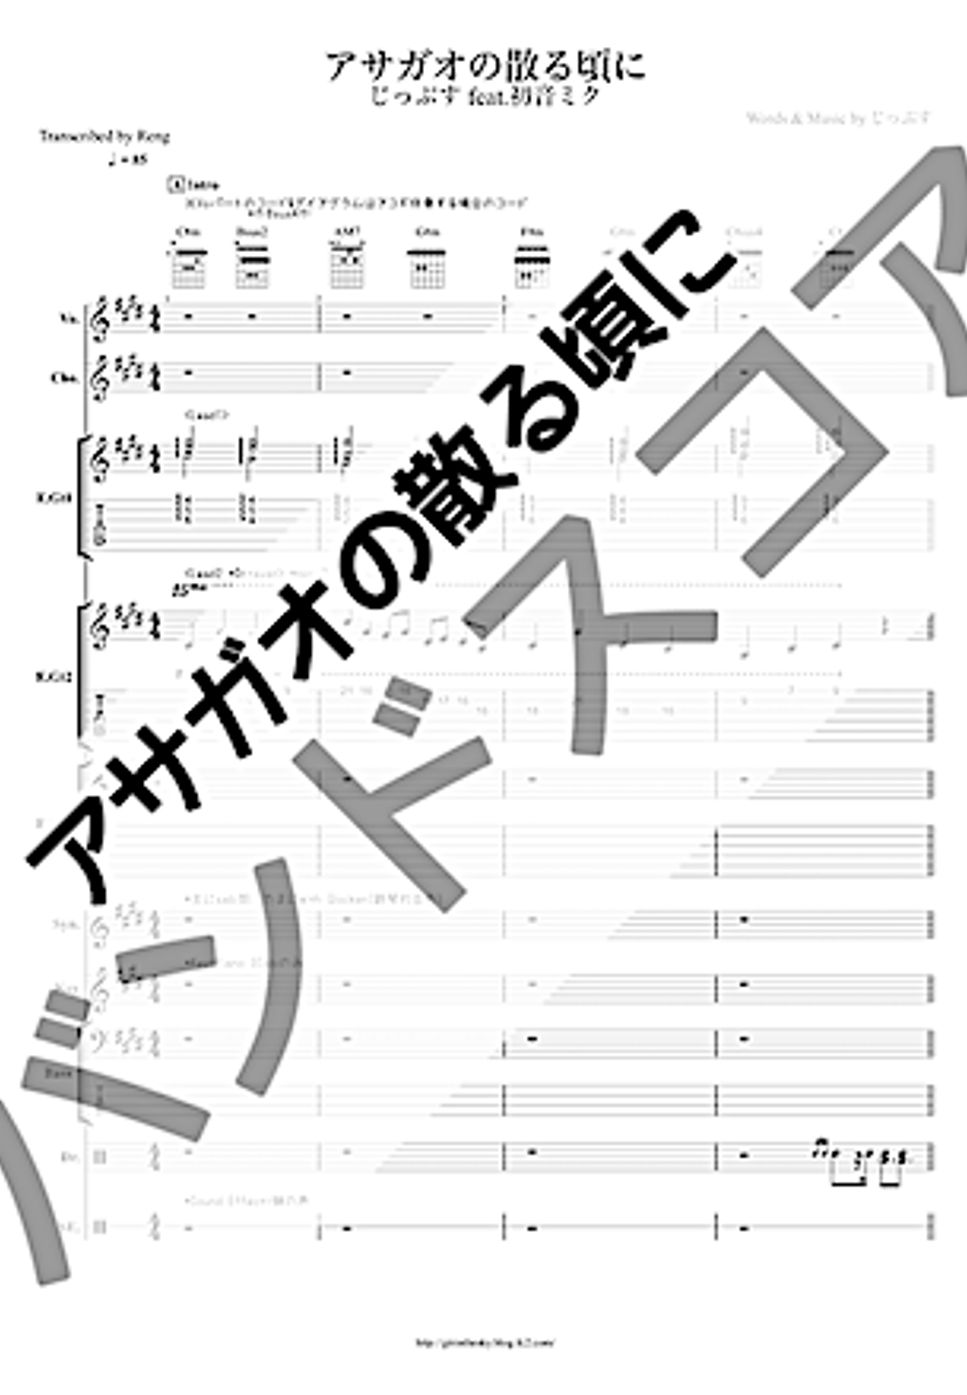 Jippusu - Asagao no chiru koro ni (band-score / VOCALOID) by Reng